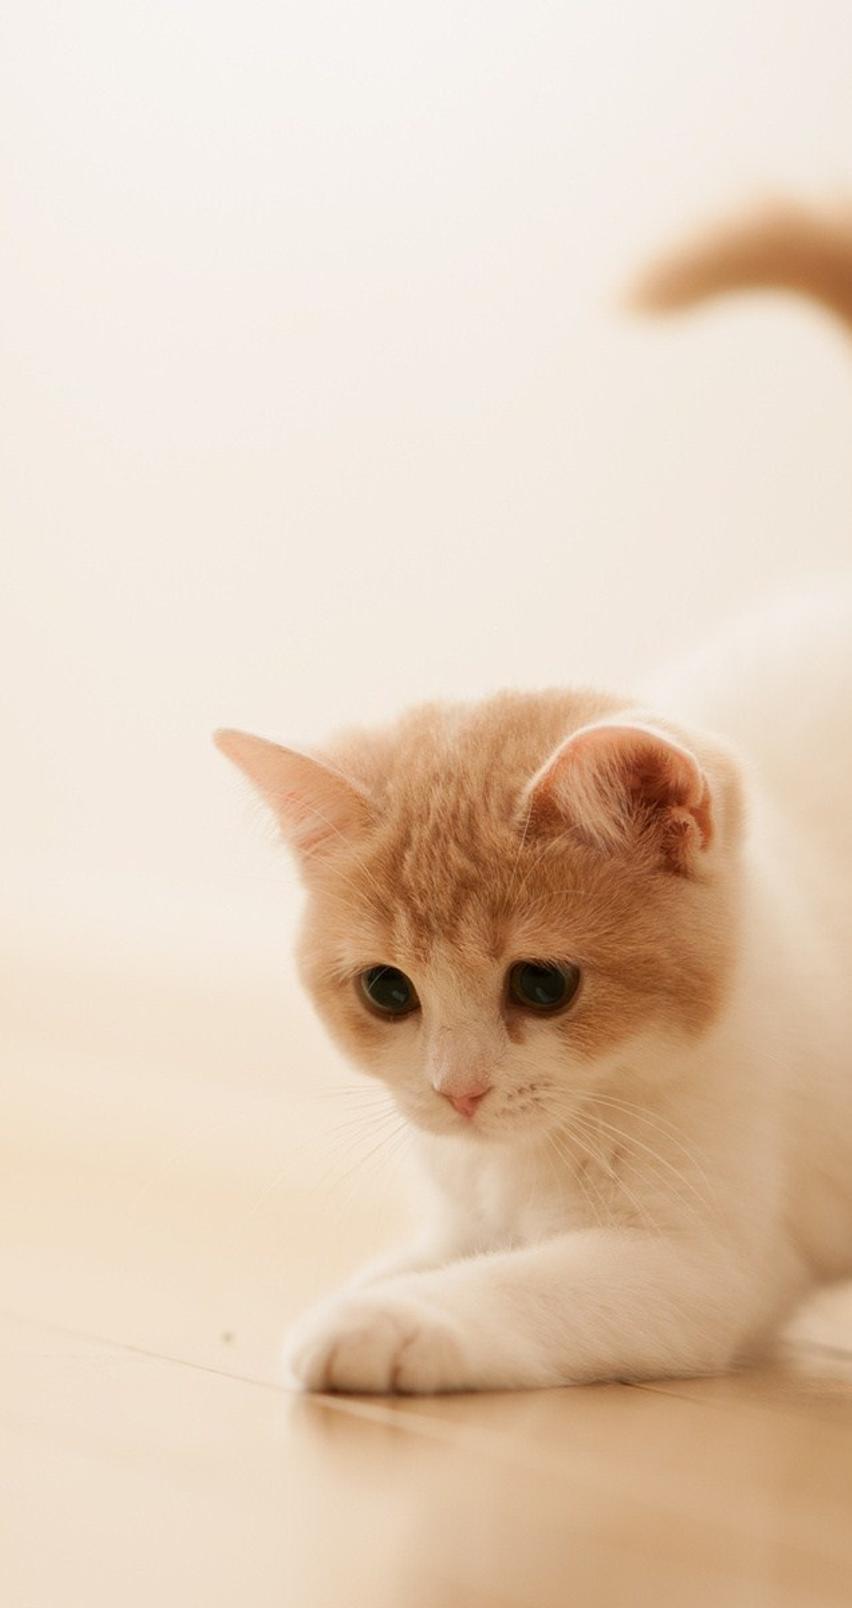 Sweet little cat - cute animal wallpaper